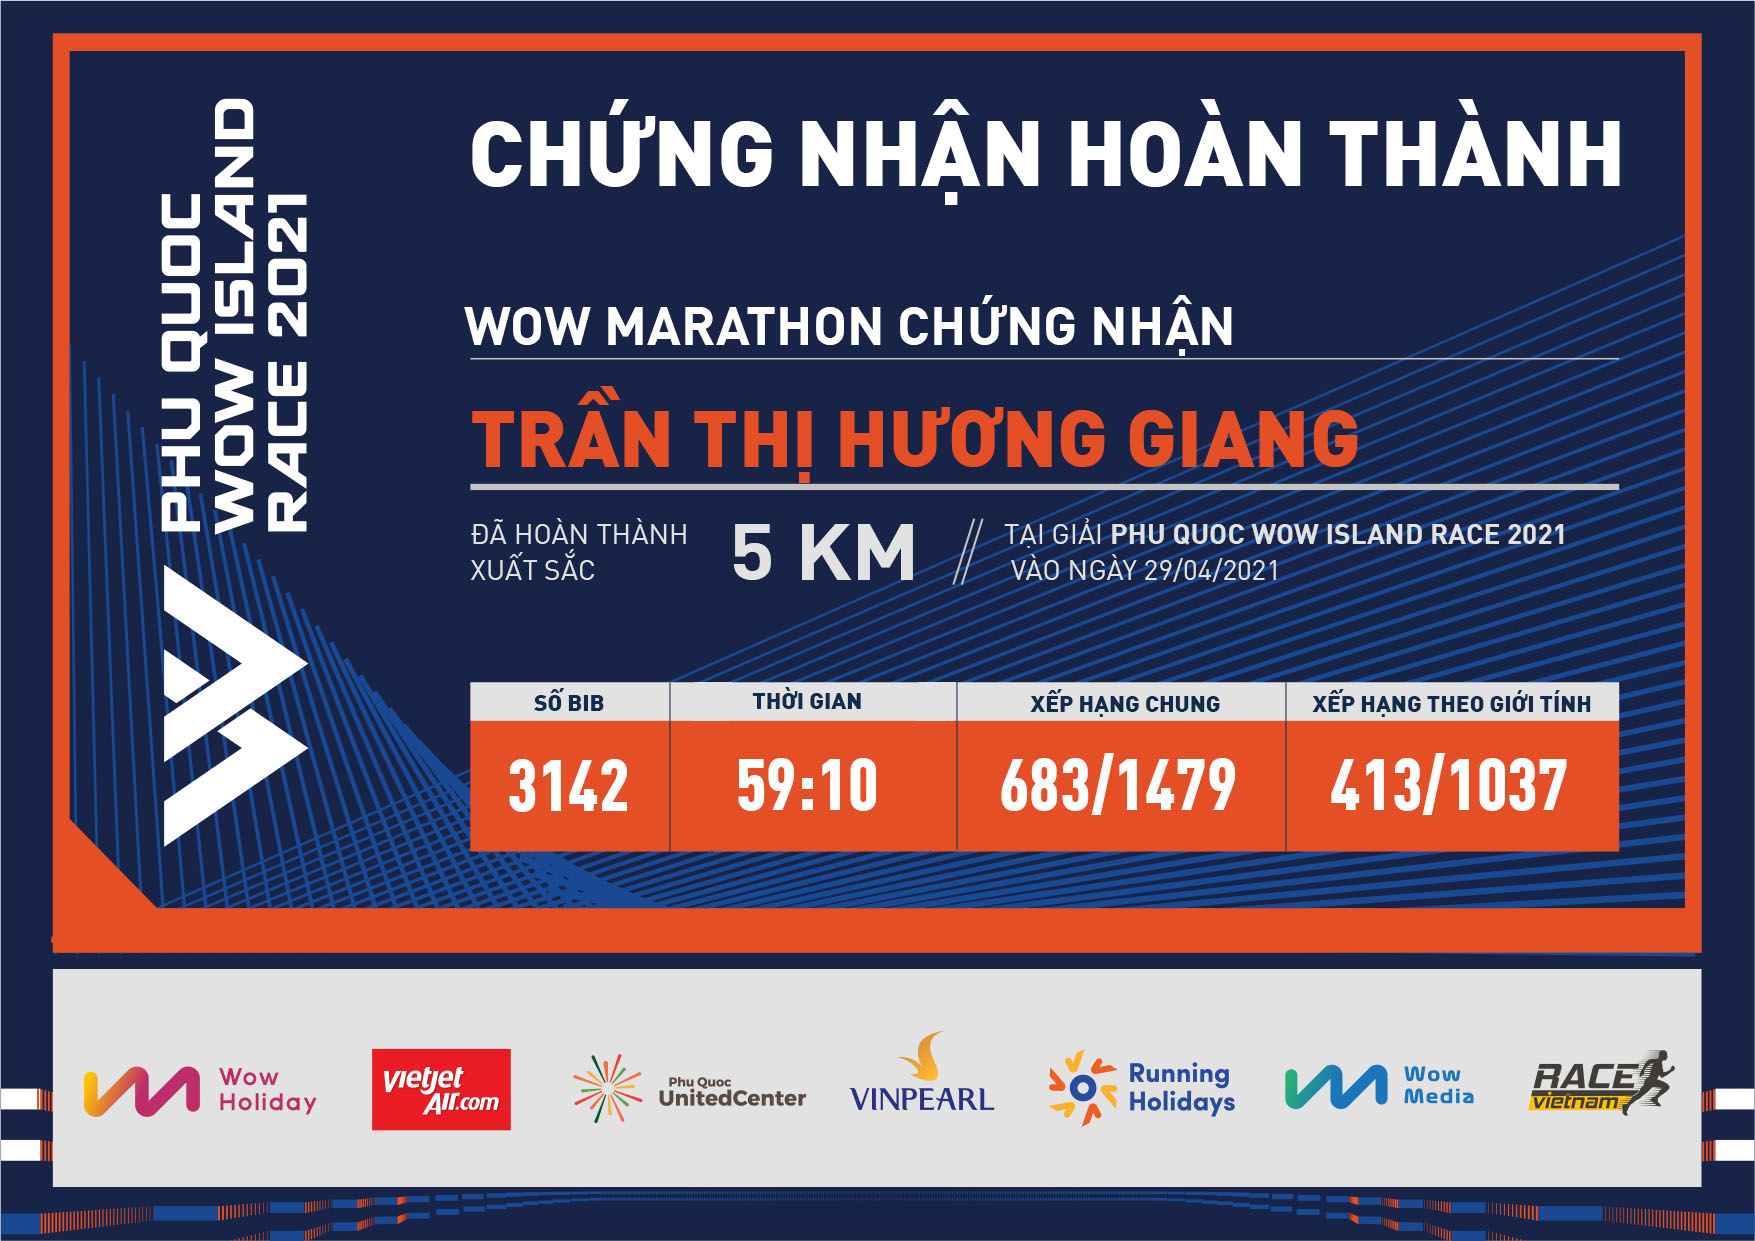 3142 - Trần Thị Hương Giang